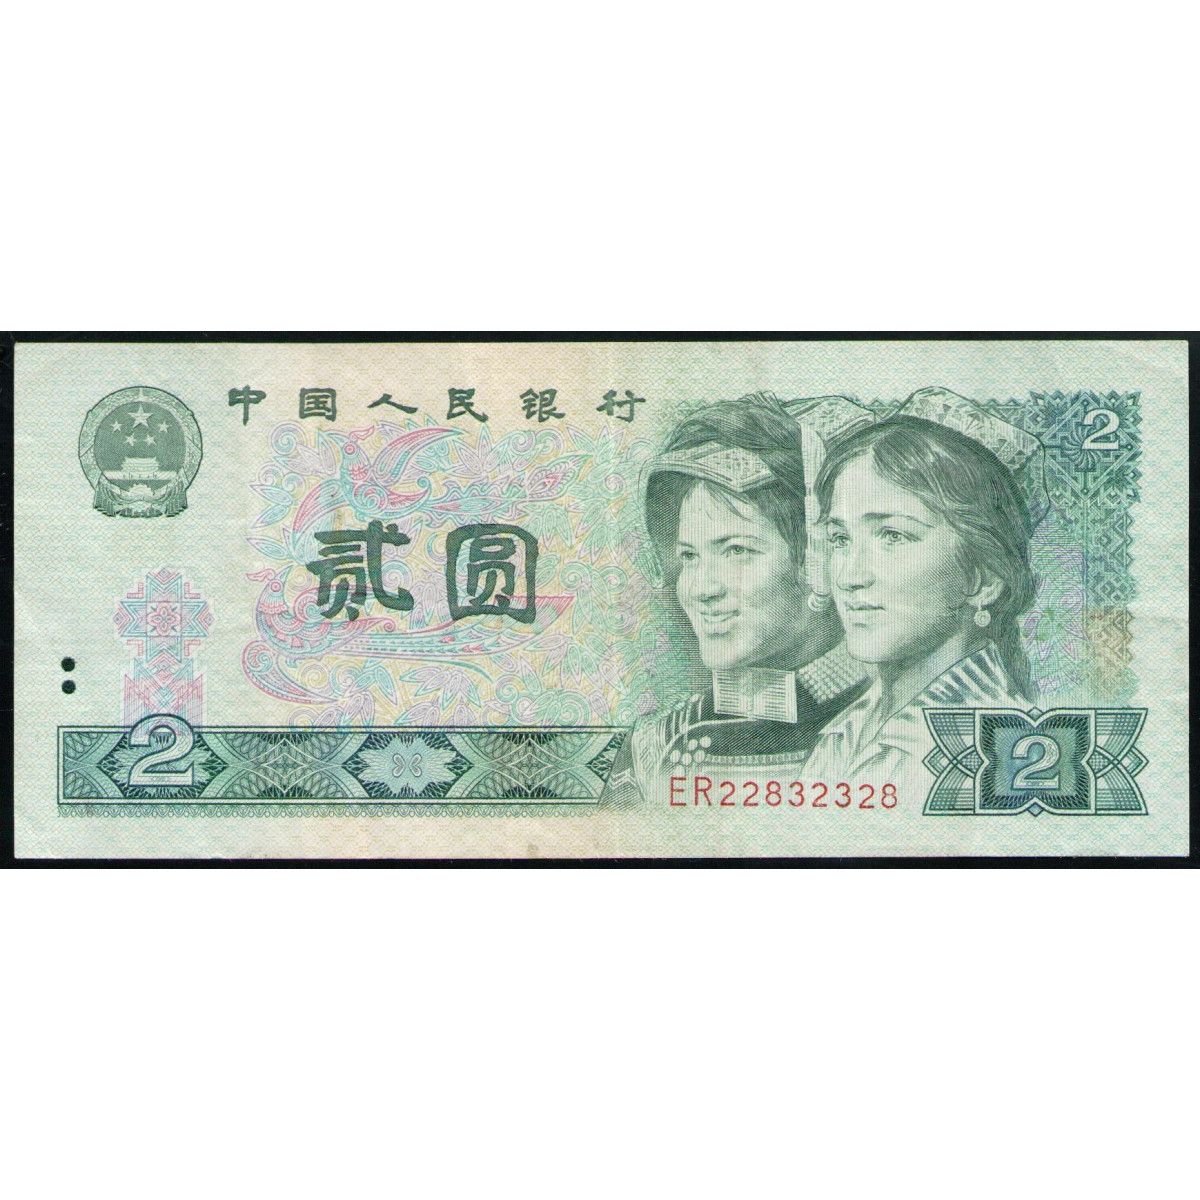 1000000 рублей в юанях. 2 Юаня 1980. Китайский юань 1980. Китай купюра 2 юаня 1980 года. 2 Юаня банкнота.